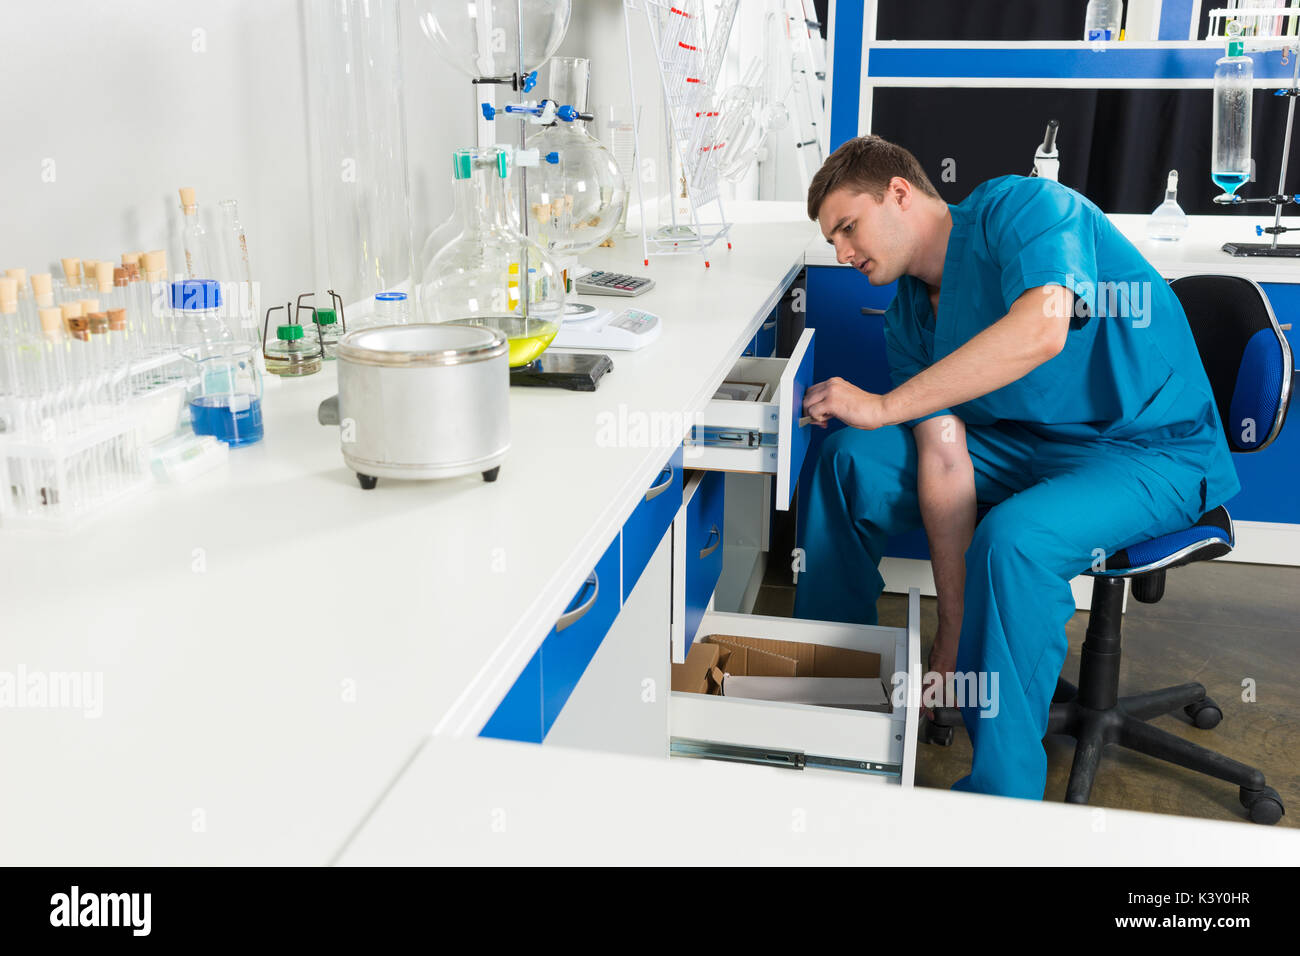 Wissenschaftler in Uniform ist auf der Suche nach etwas, in einem Fall in einem Labor. Gesundheitswesen und Biotechnologie Konzept Stockfoto